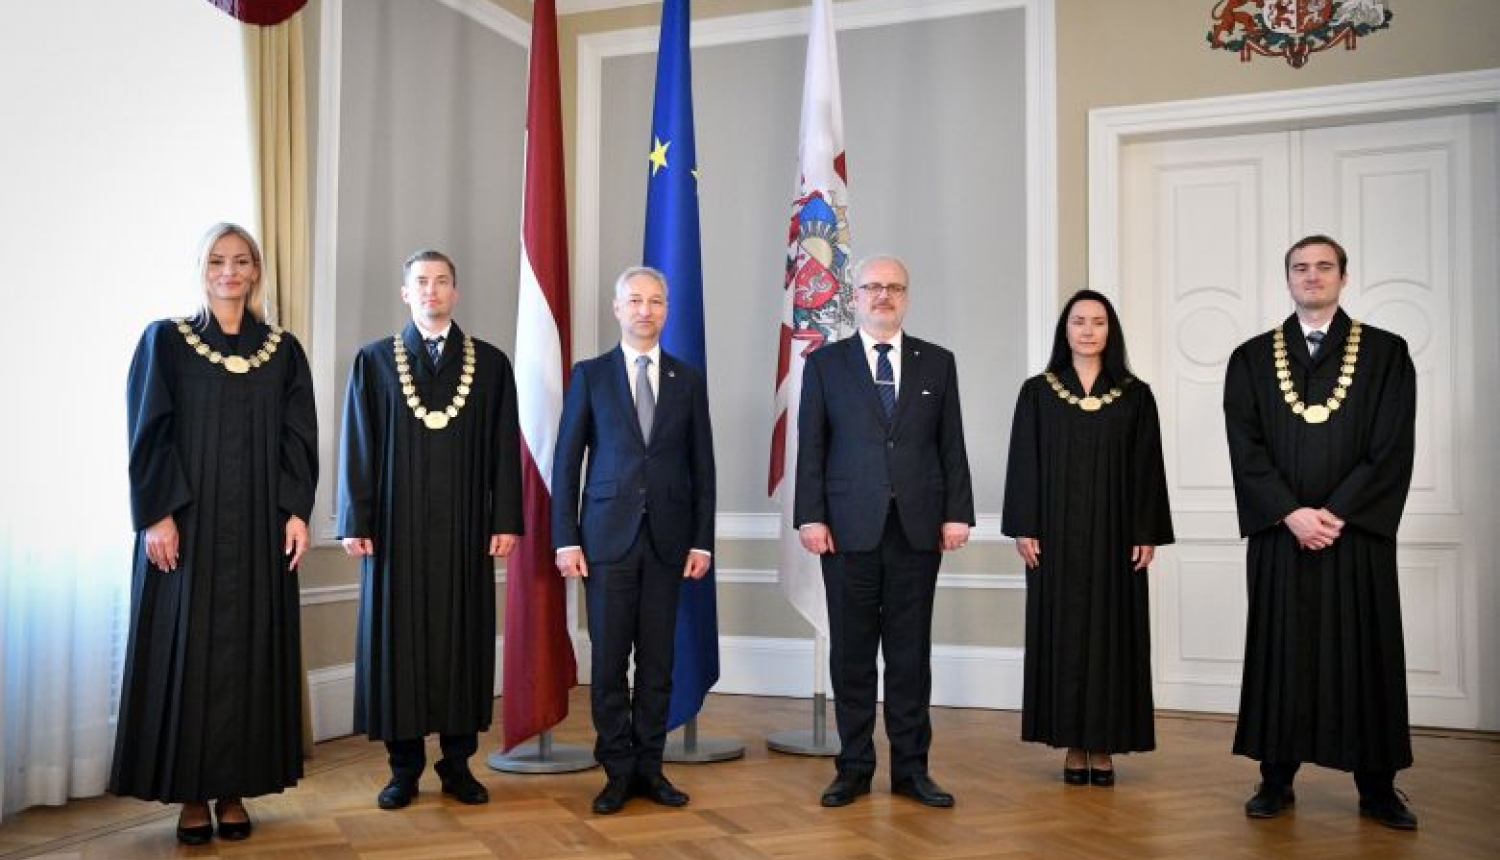 Rīgas pilī tiesneša solījumu Valsts prezidentam dod tiesneši Sanita Babre, Edgars Biezais, Inga Serafimova un Dainis Slišāns